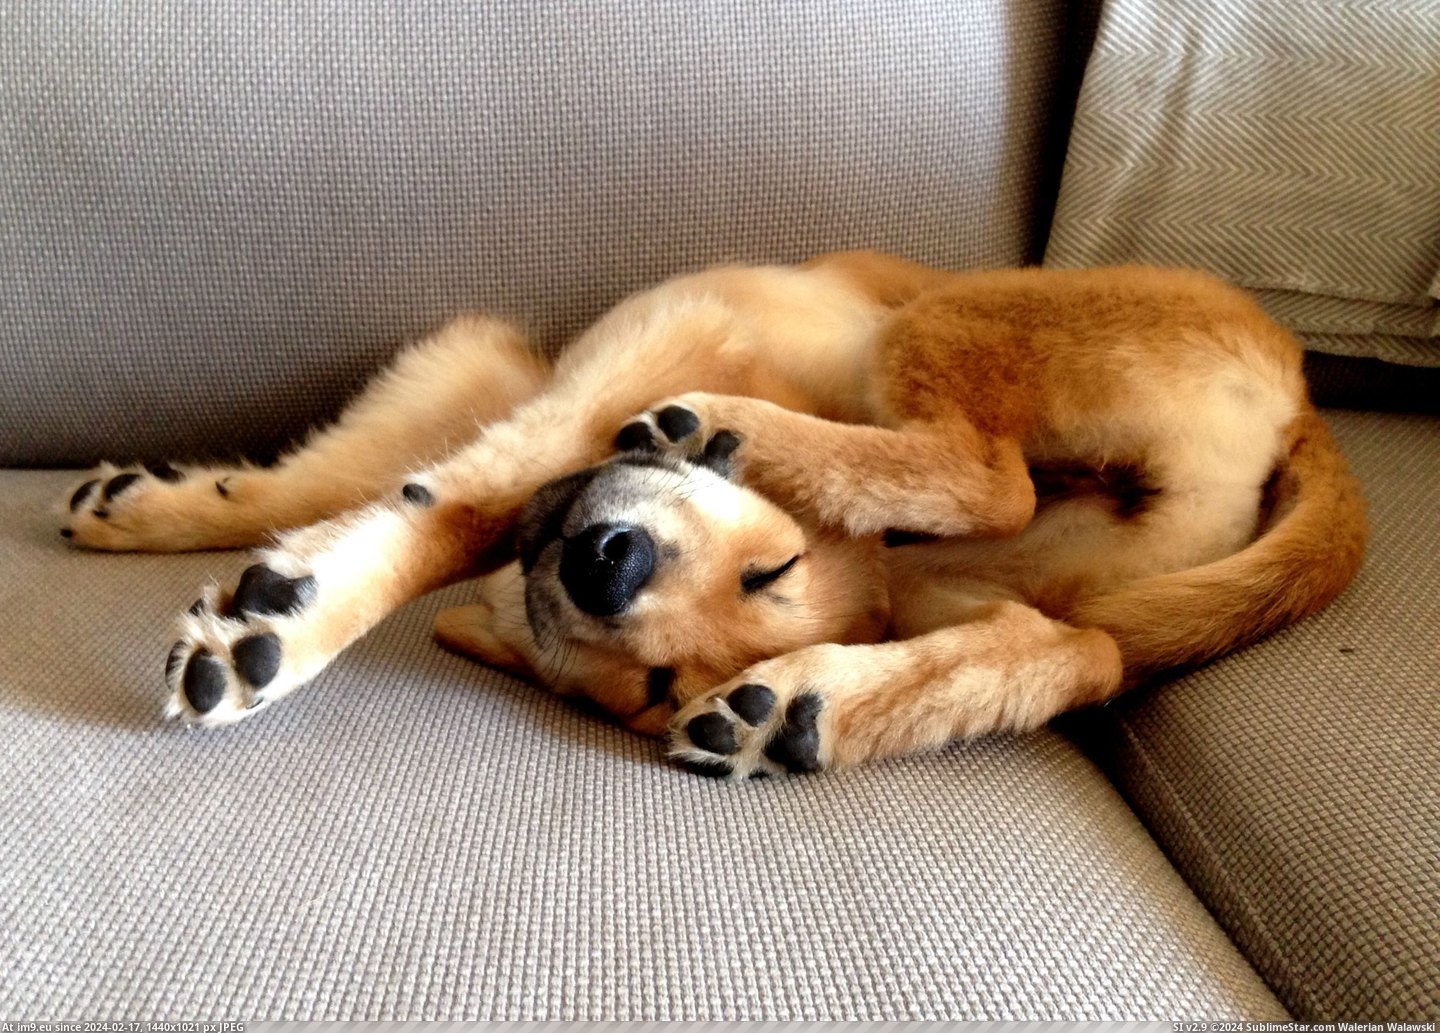 #Puppy  #Pretzel [Aww] Puppy pretzel Pic. (Bild von album My r/AWW favs))